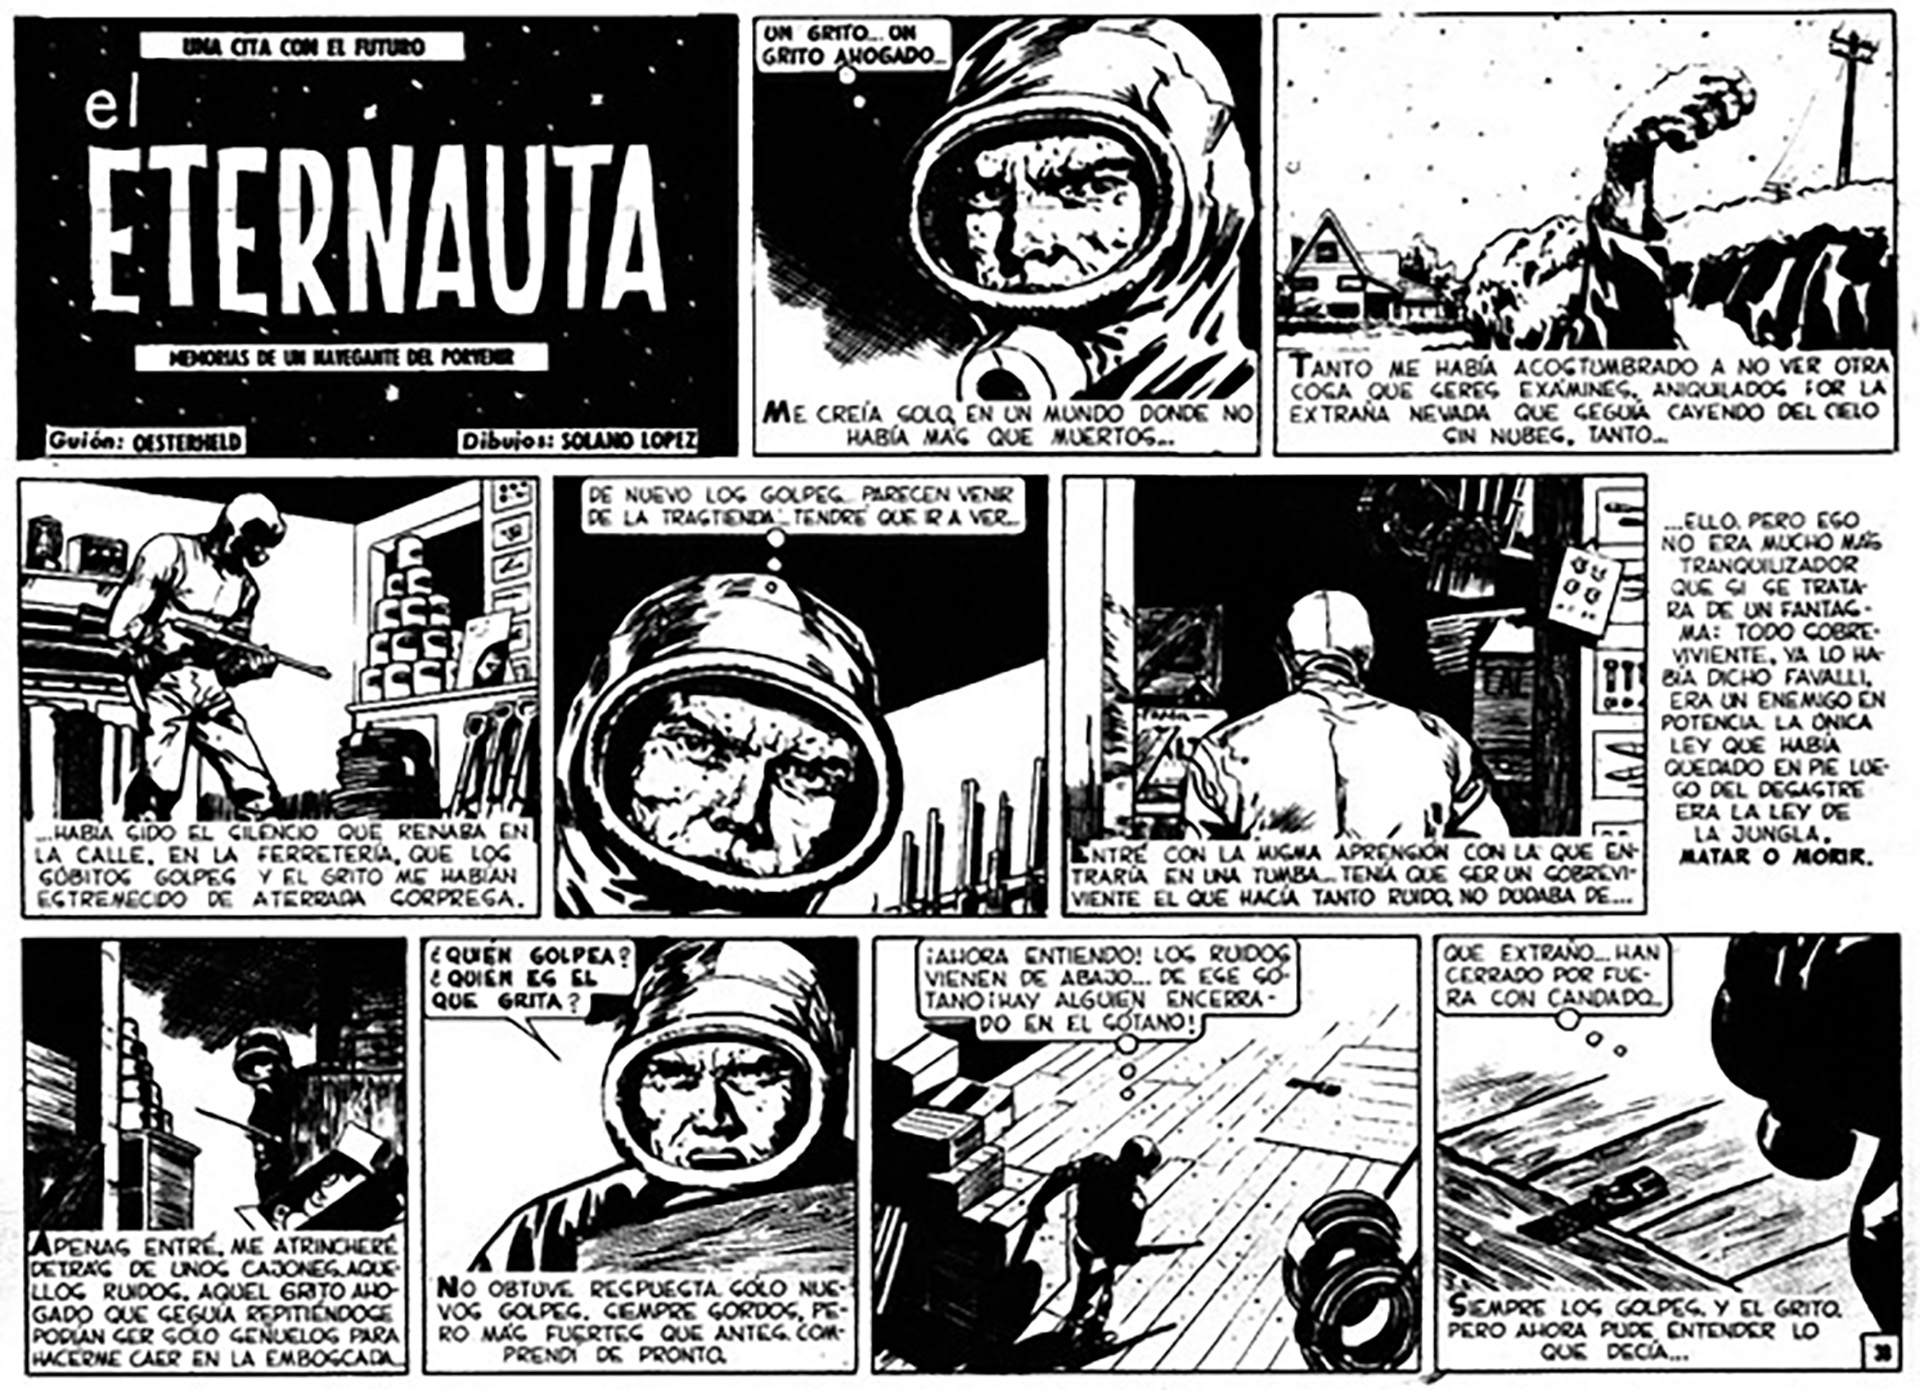 En 1957 salió la primera entrega de El Eternauta, que fue un éxito inmediato. Se la promocionaba como “la historia del hombre que viene de regreso del futuro, que lo ha visto todo, la muerte de nuestra generación, el destino final del planeta”